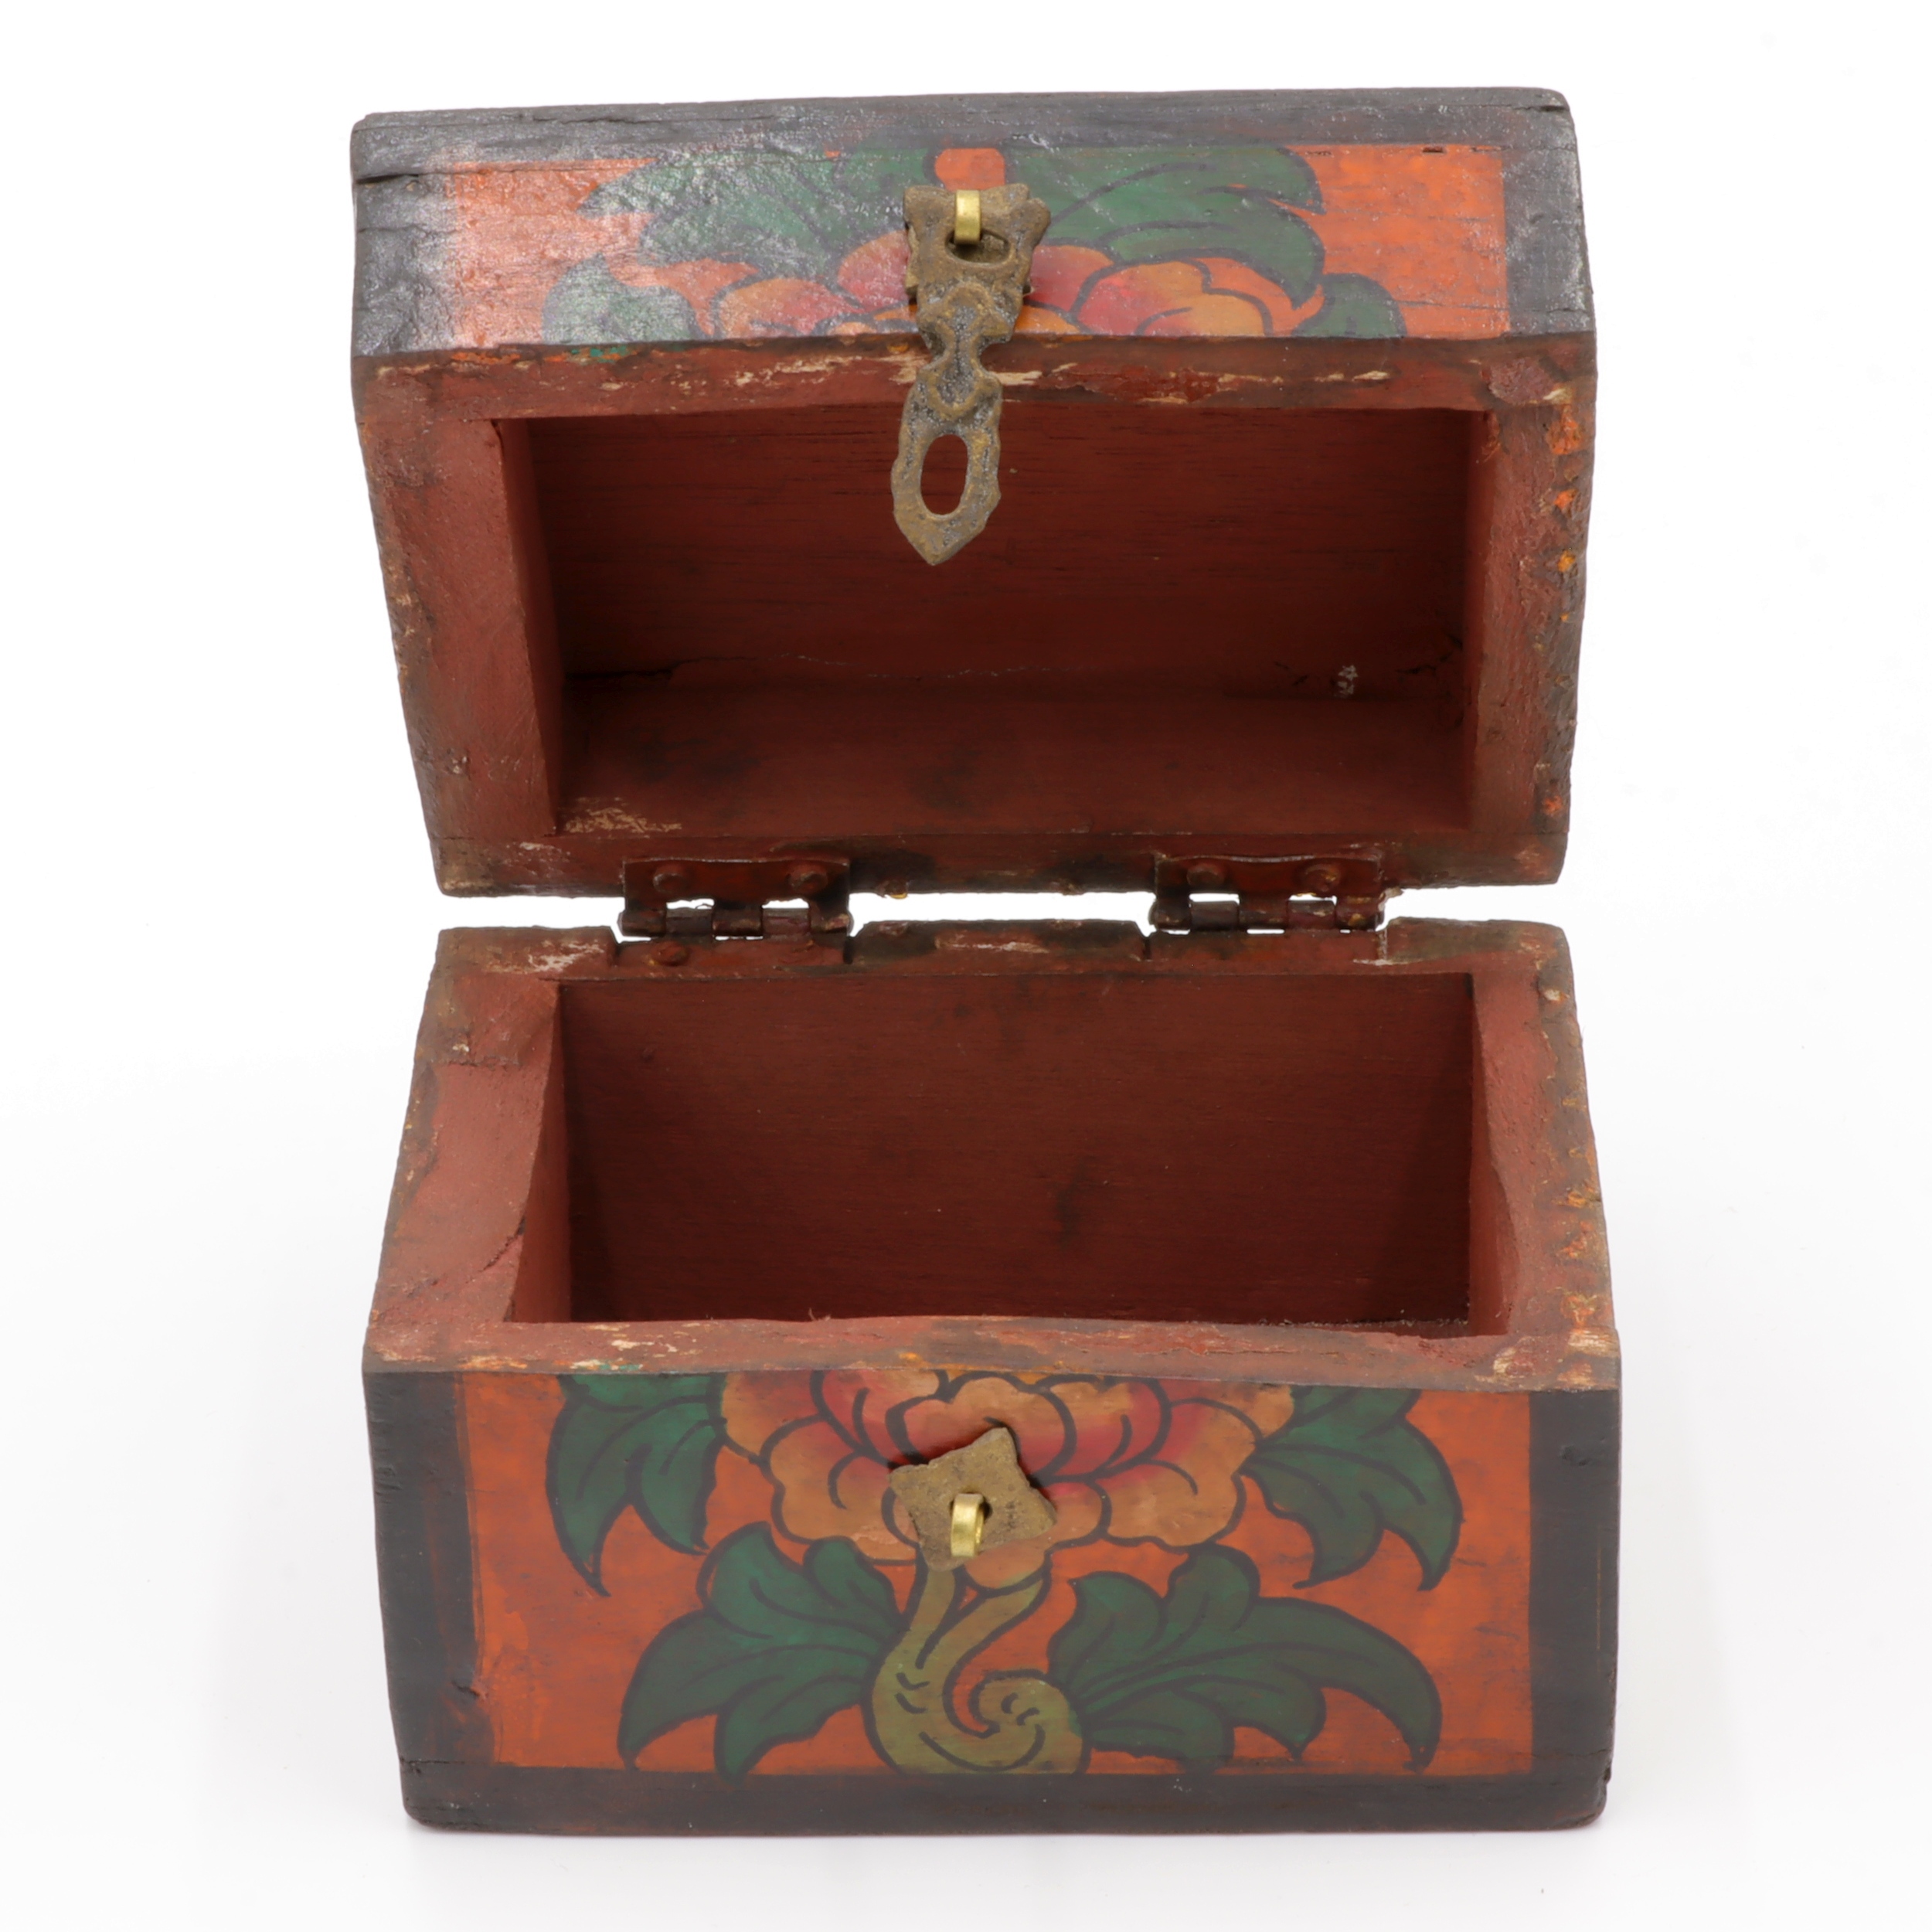 Handbemalte Kiste aus Holz - Lotus, Endlosknoten - Truhen Design - typisch nepalesiche Farben - dunkel - fair gehandelt aus Nepal